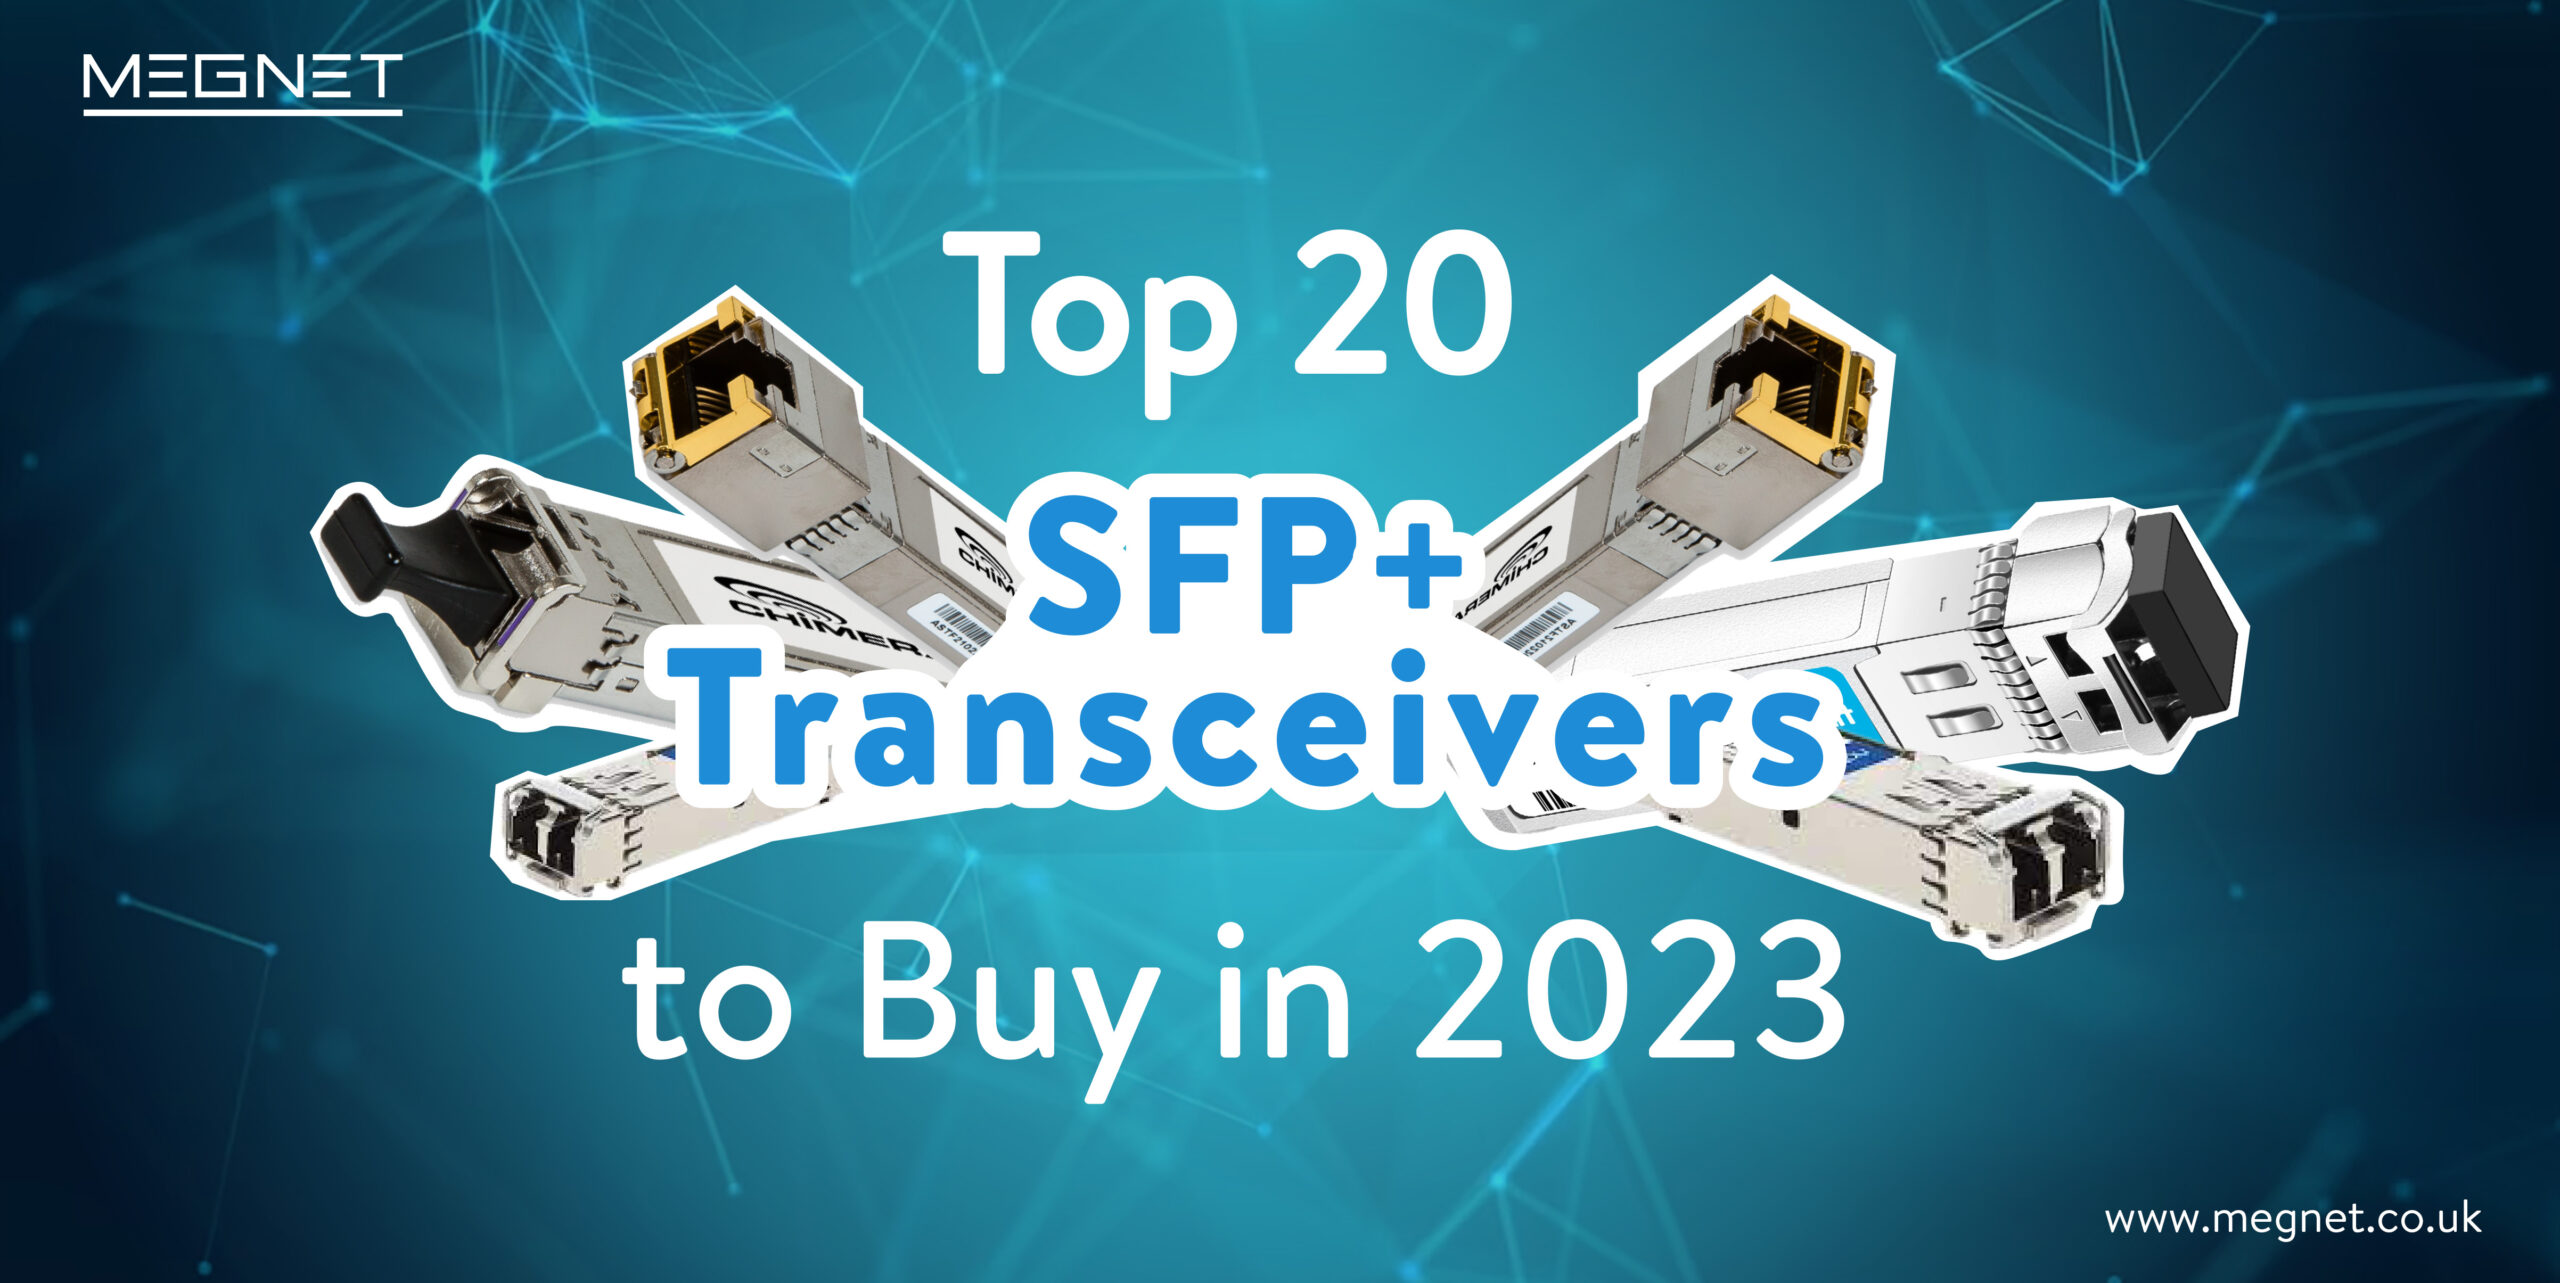 SFP+ Transceivers